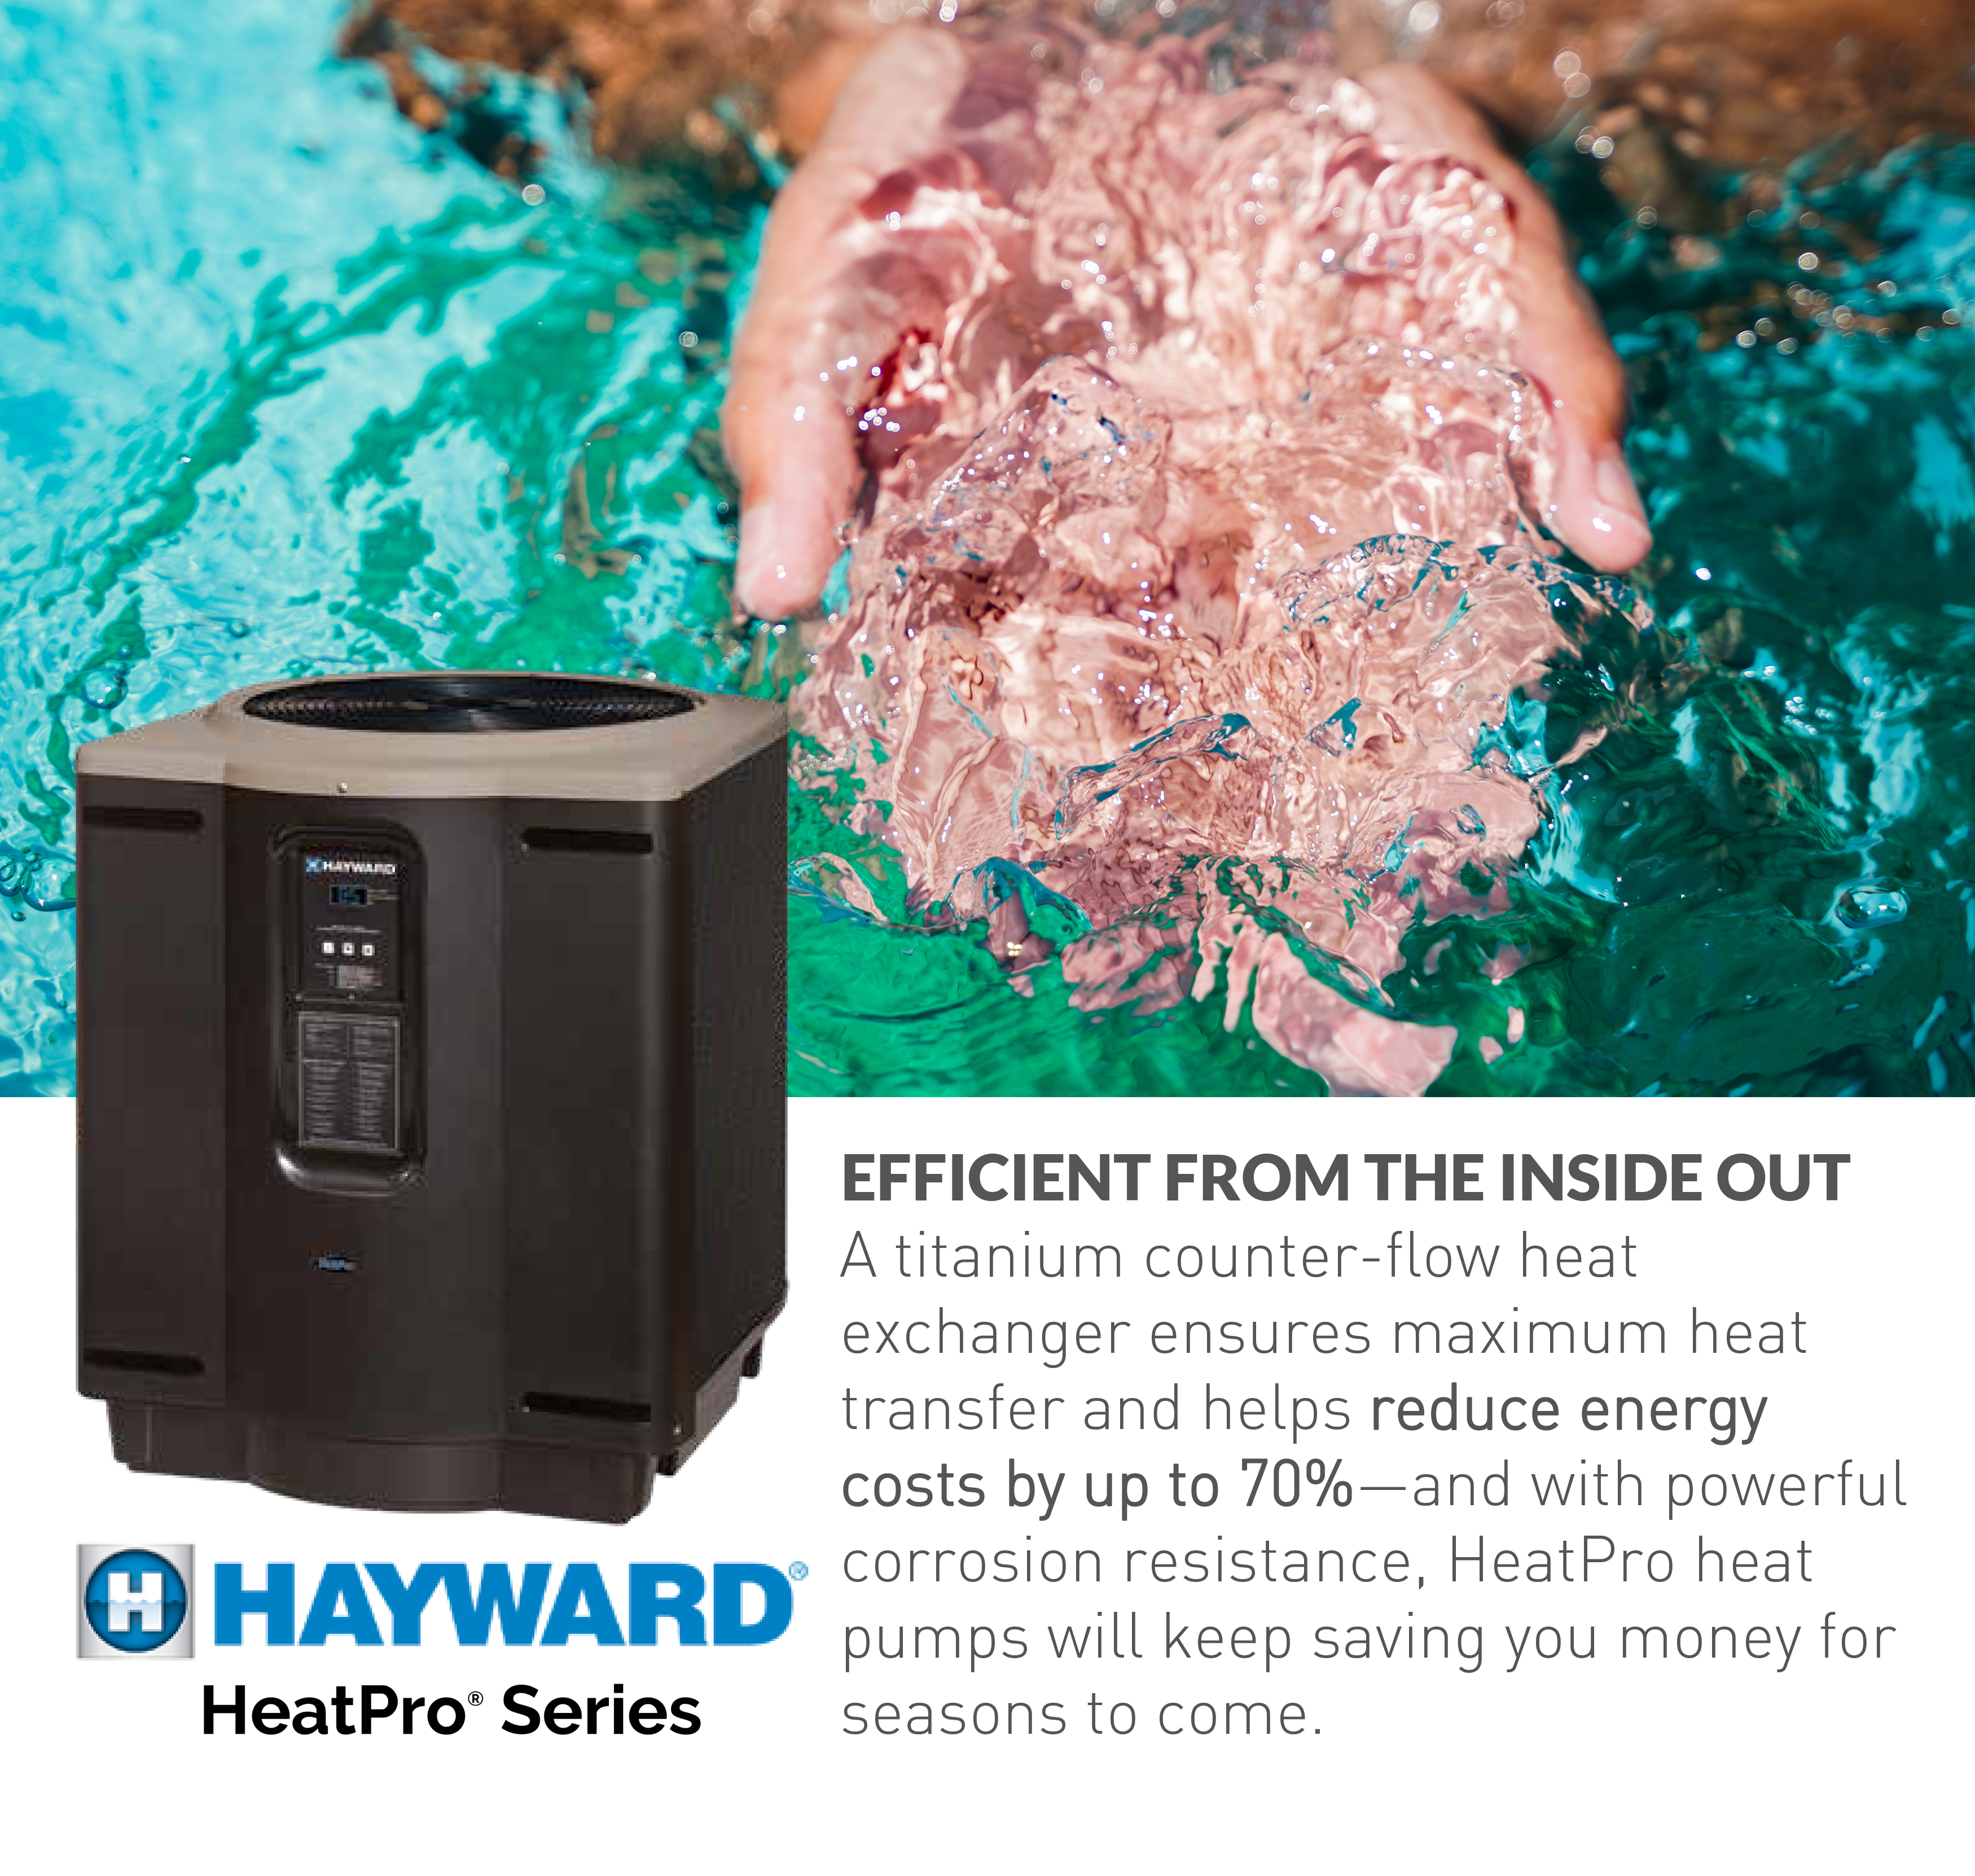 Hayward HeatPro Heat Pumps